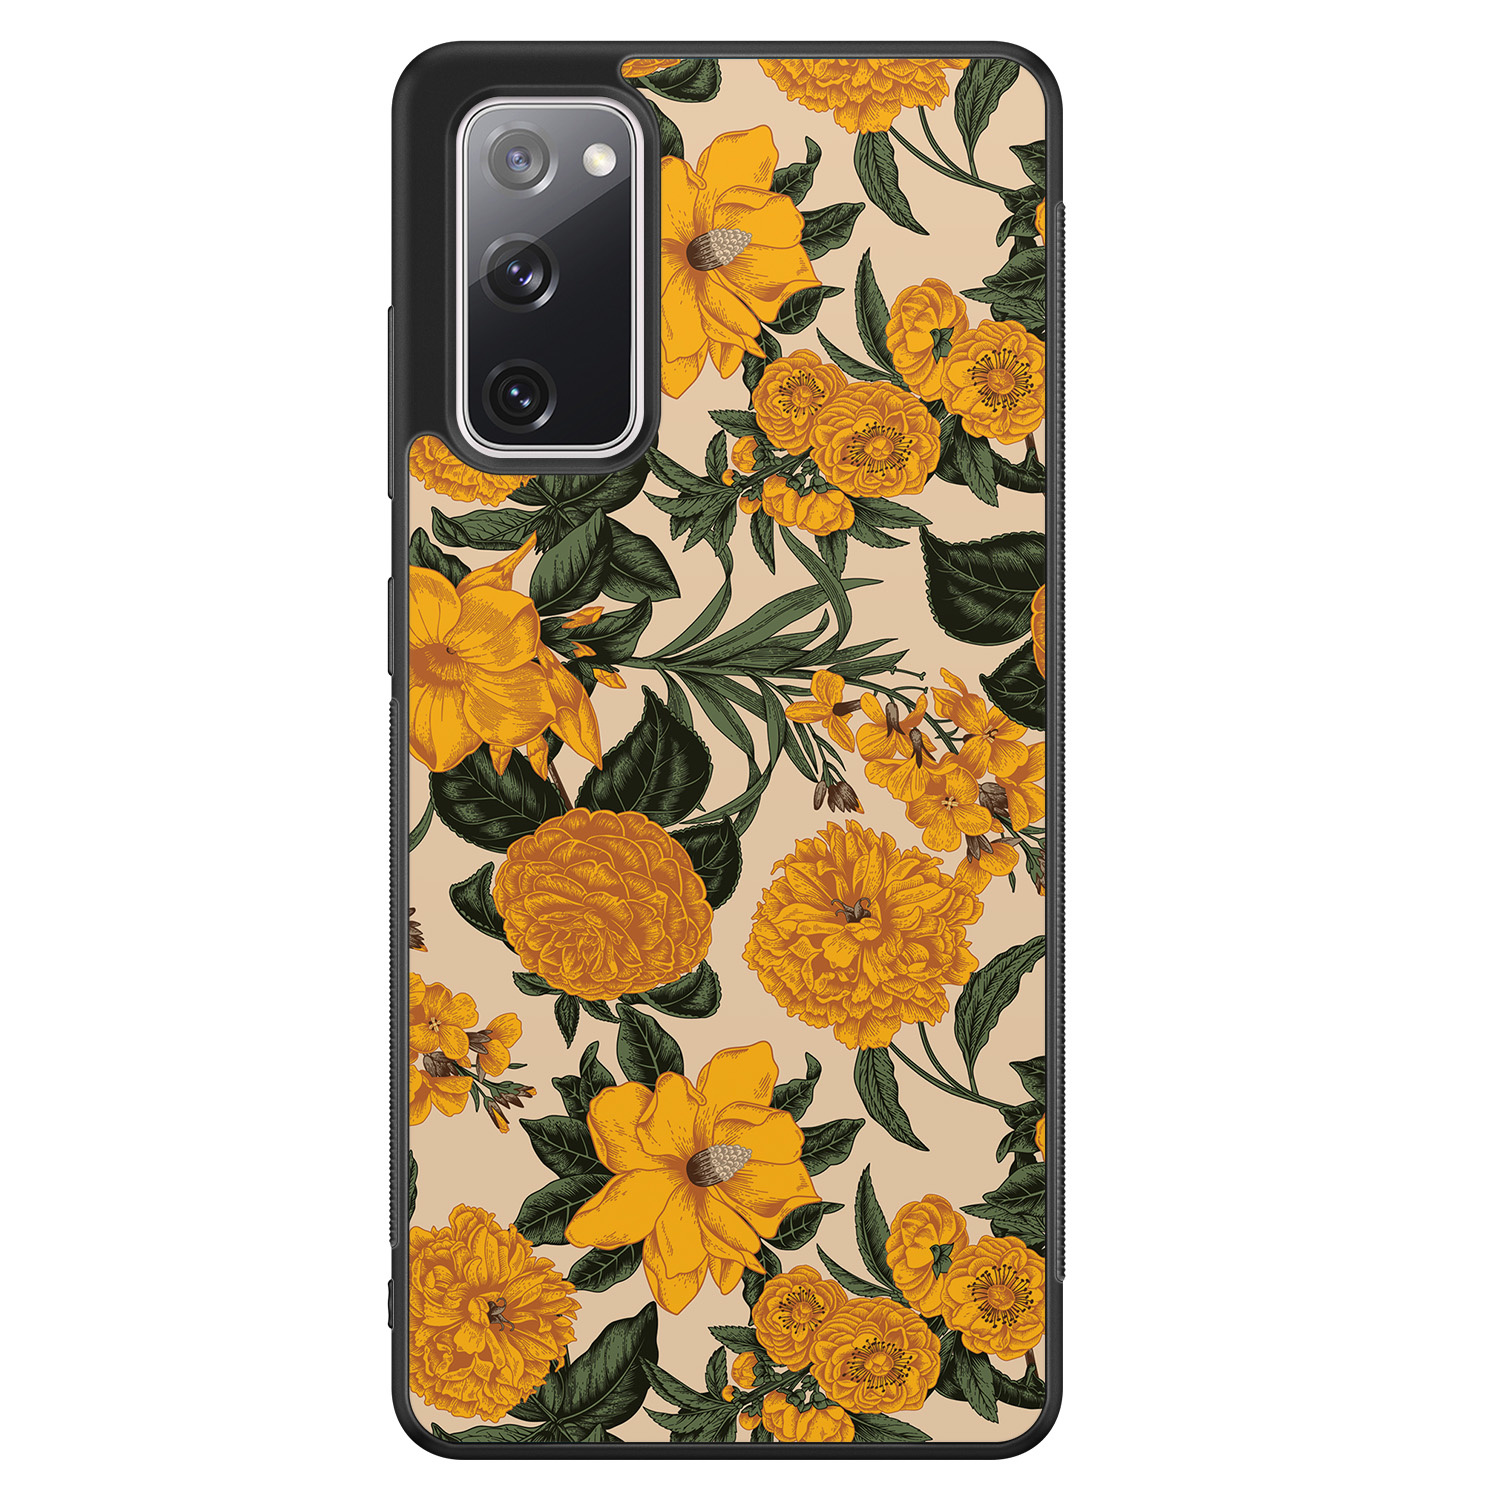 Leuke Telefoonhoesjes Samsung Galaxy S20 FE hoesje - Retro flowers